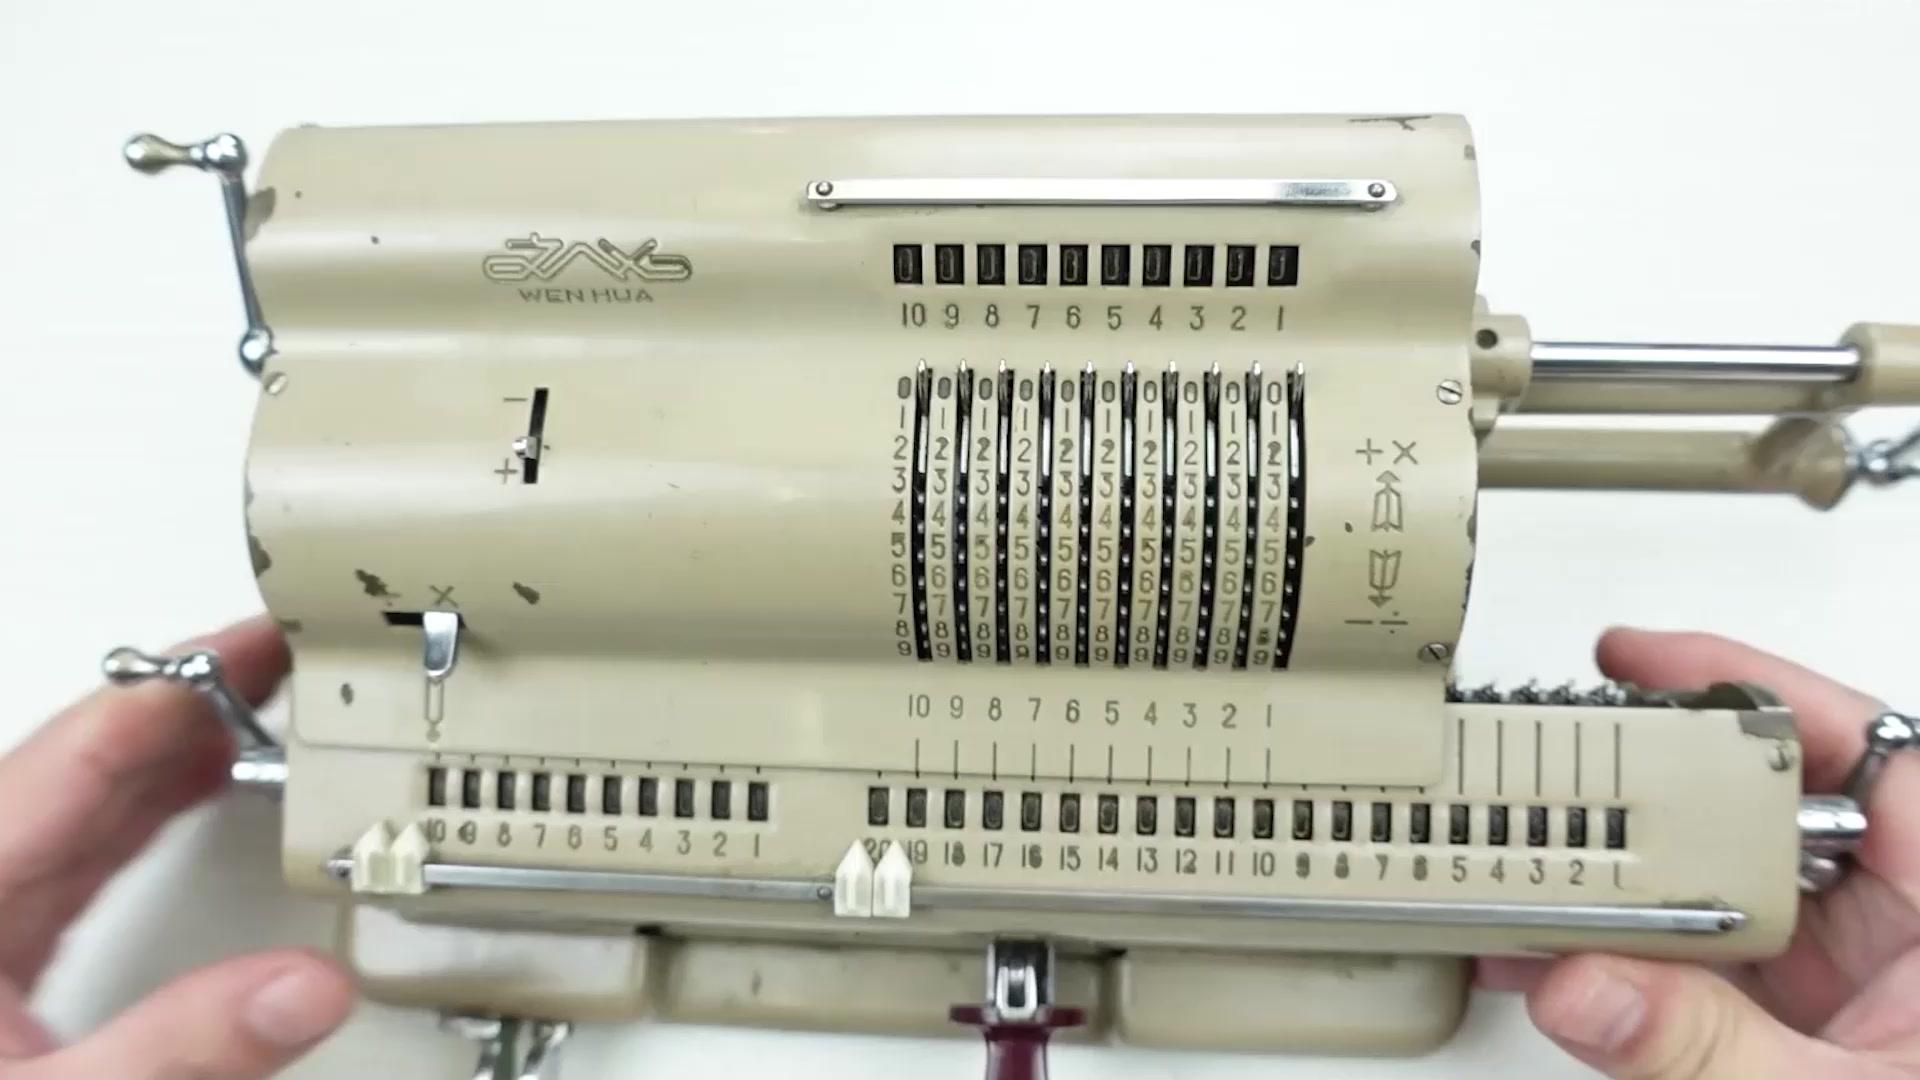 國產手搖機械計算機，拆開看看50年前它巧妙的工業設計和機械原理  #硬核拆解 